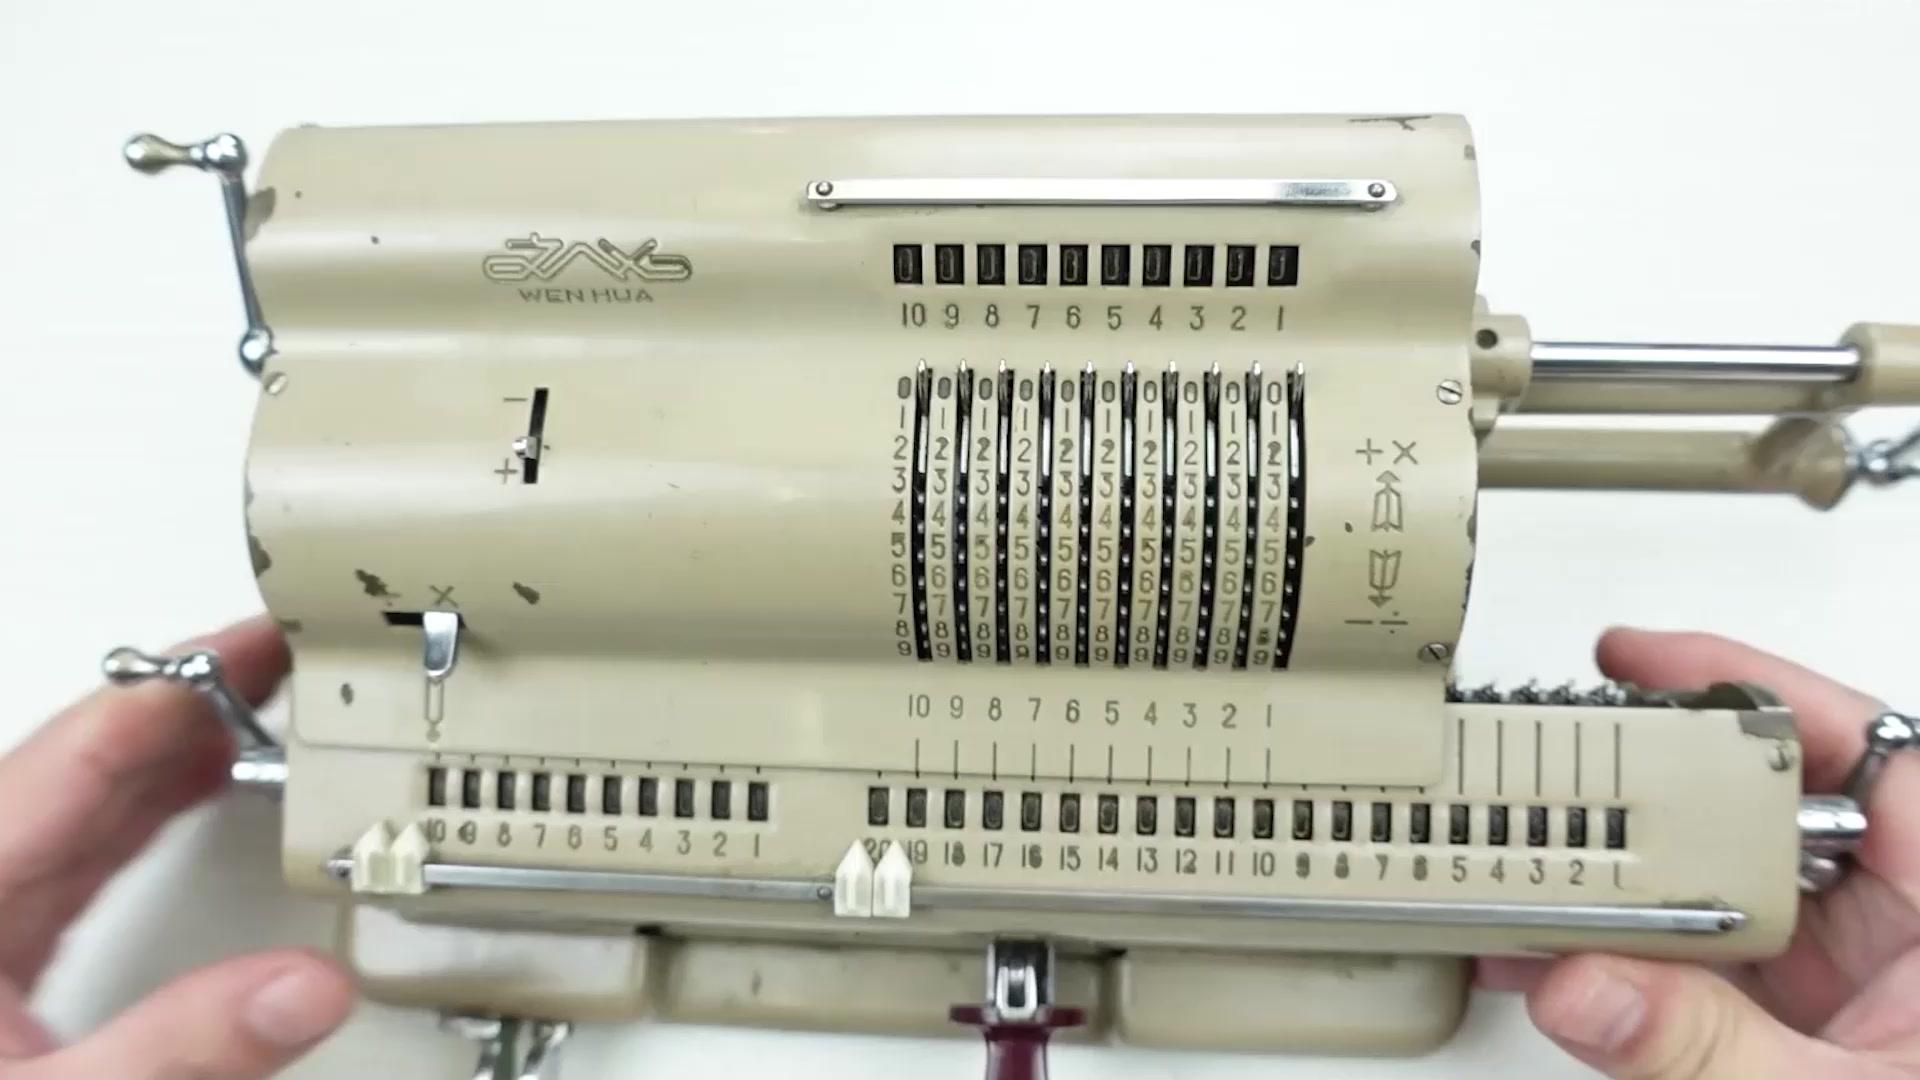 國產手搖機械計算機，拆開看看50年前它巧妙的工業設計和機械原理  #硬核拆解 